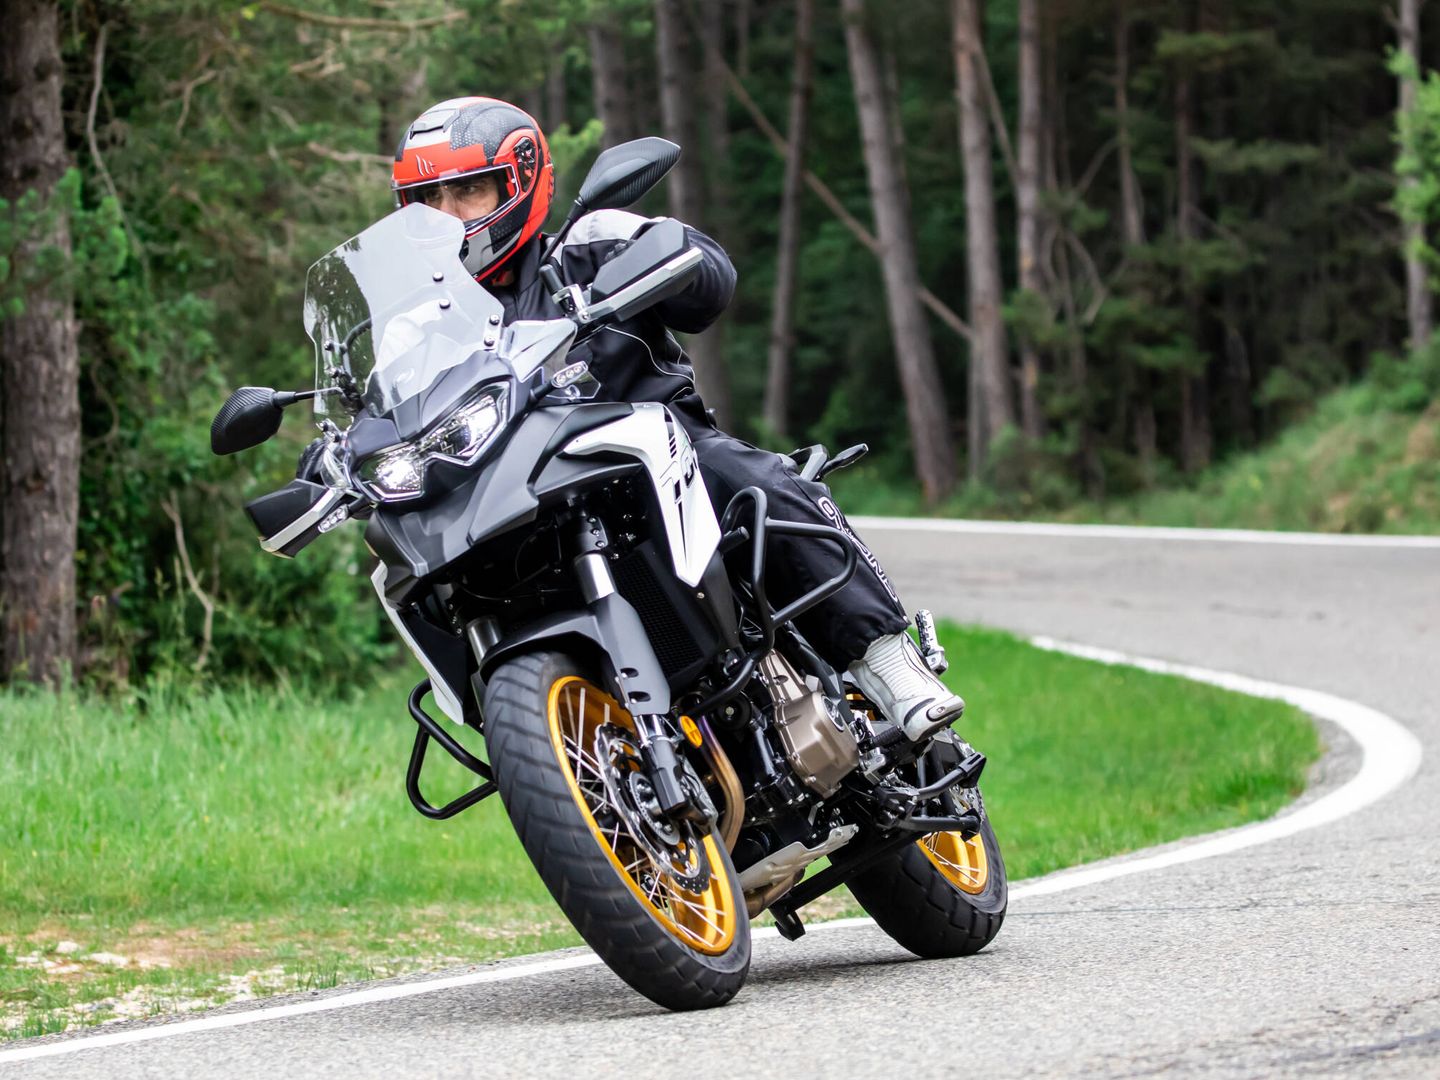 La SRT 700X es una moto muy completa, ideal para moverse por carretera de curvas; y una excelente opción turística.